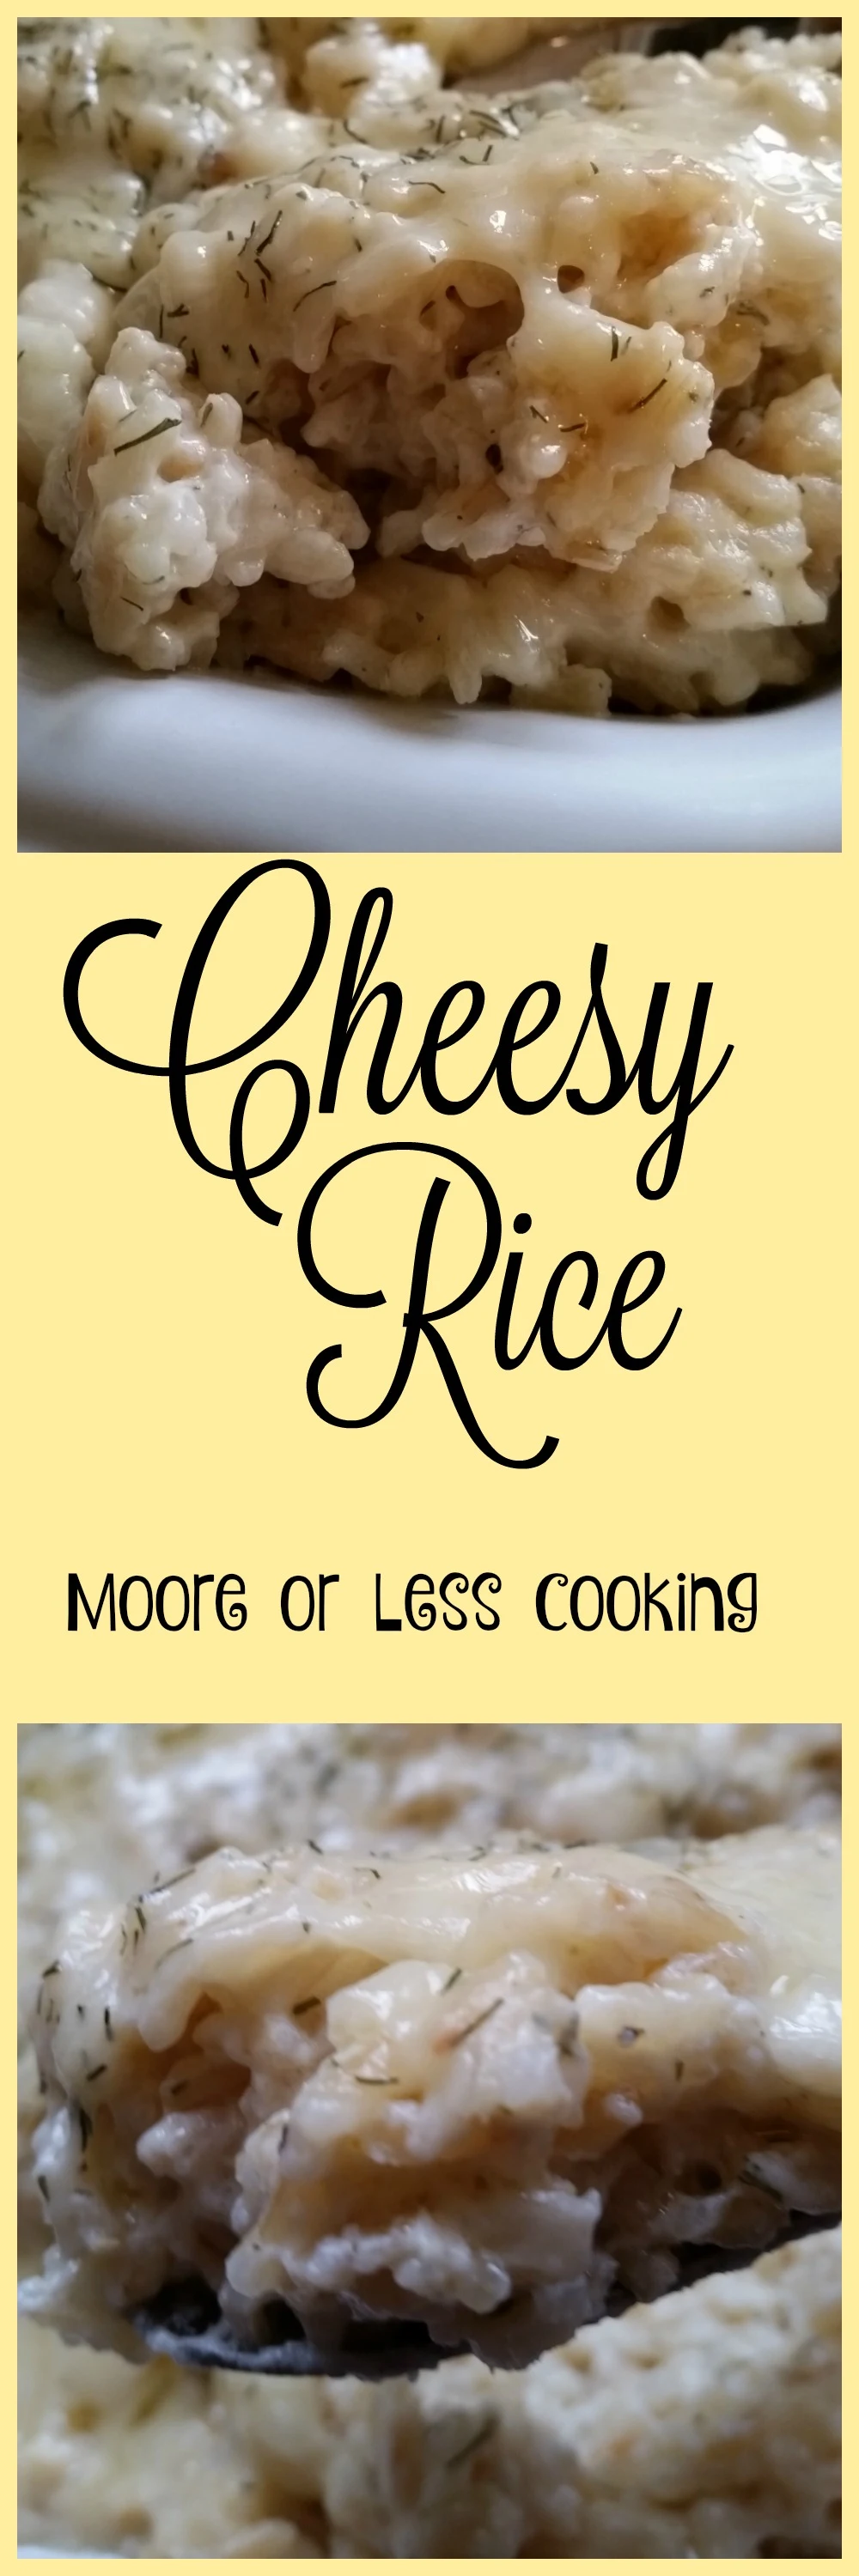 cheesy rice